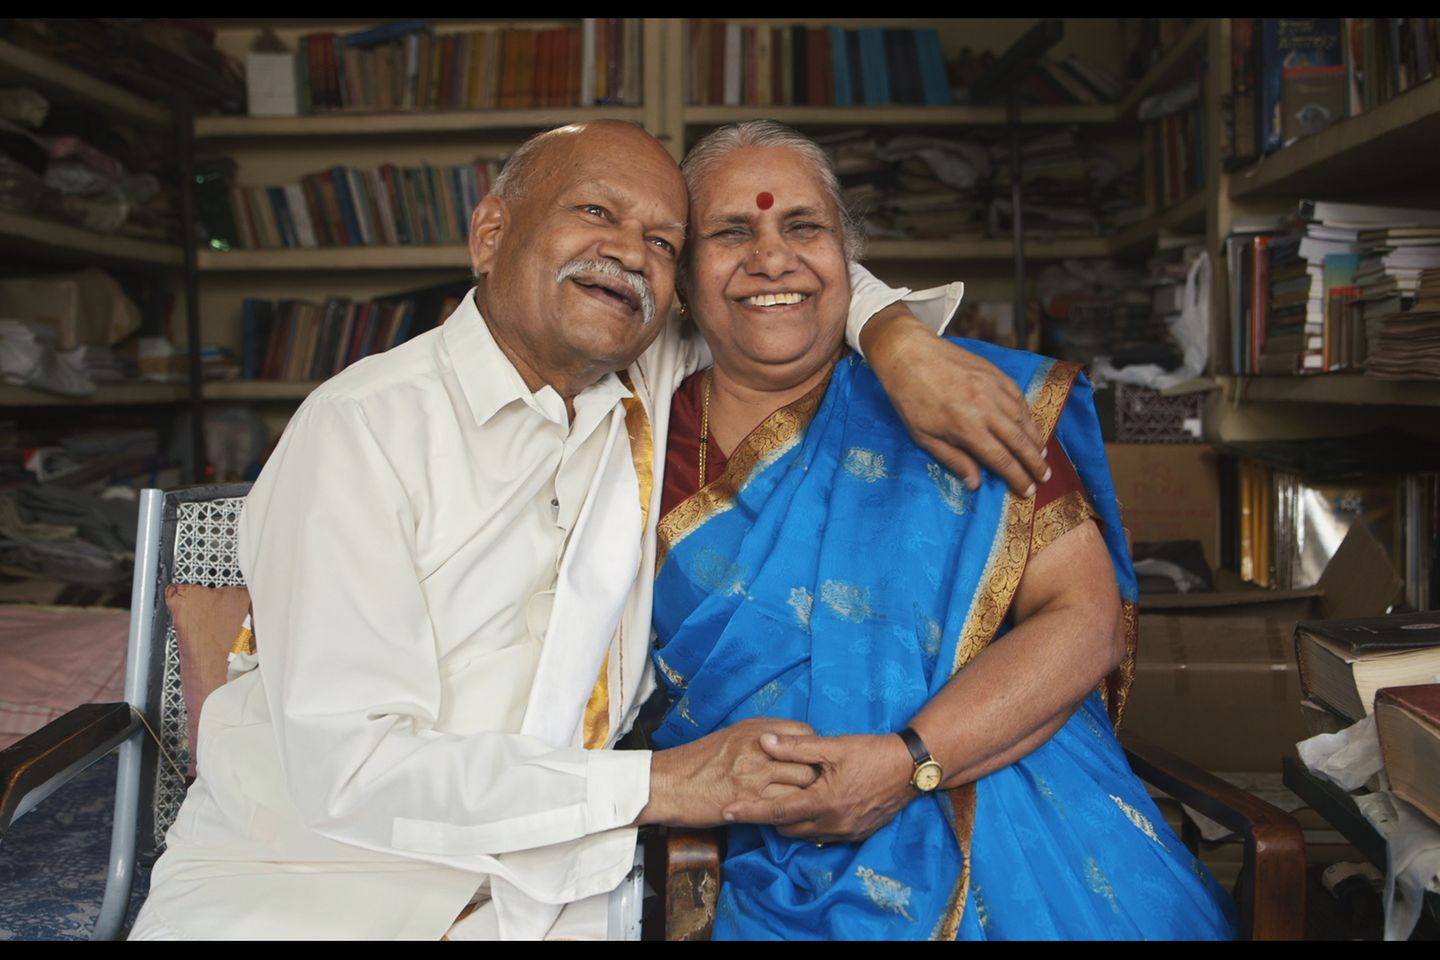 Kamala u. Nagarajayya Hampana (Indien, verheiratet seit 1961)  